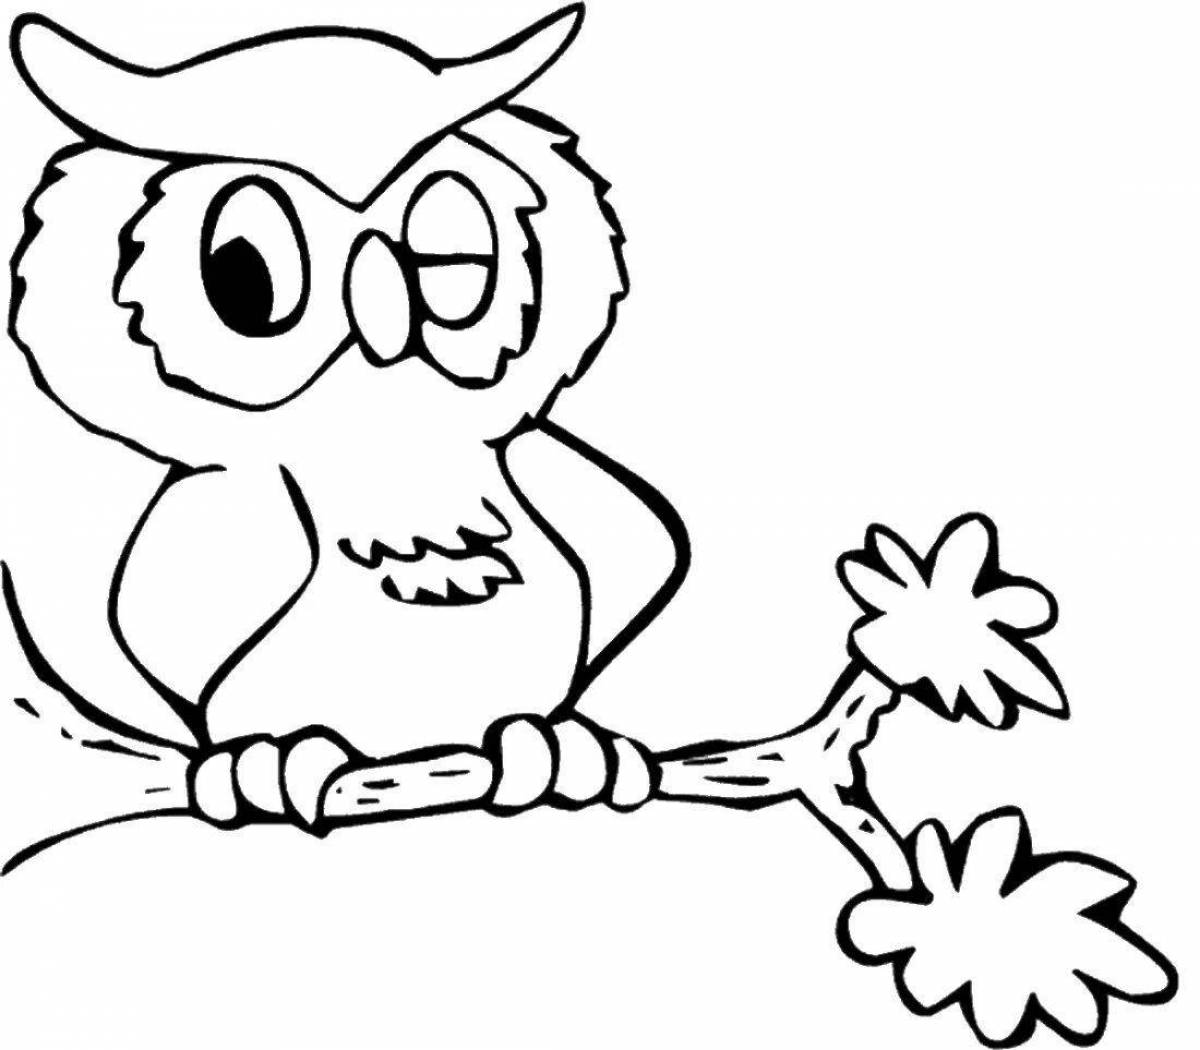 Adorable owl coloring book